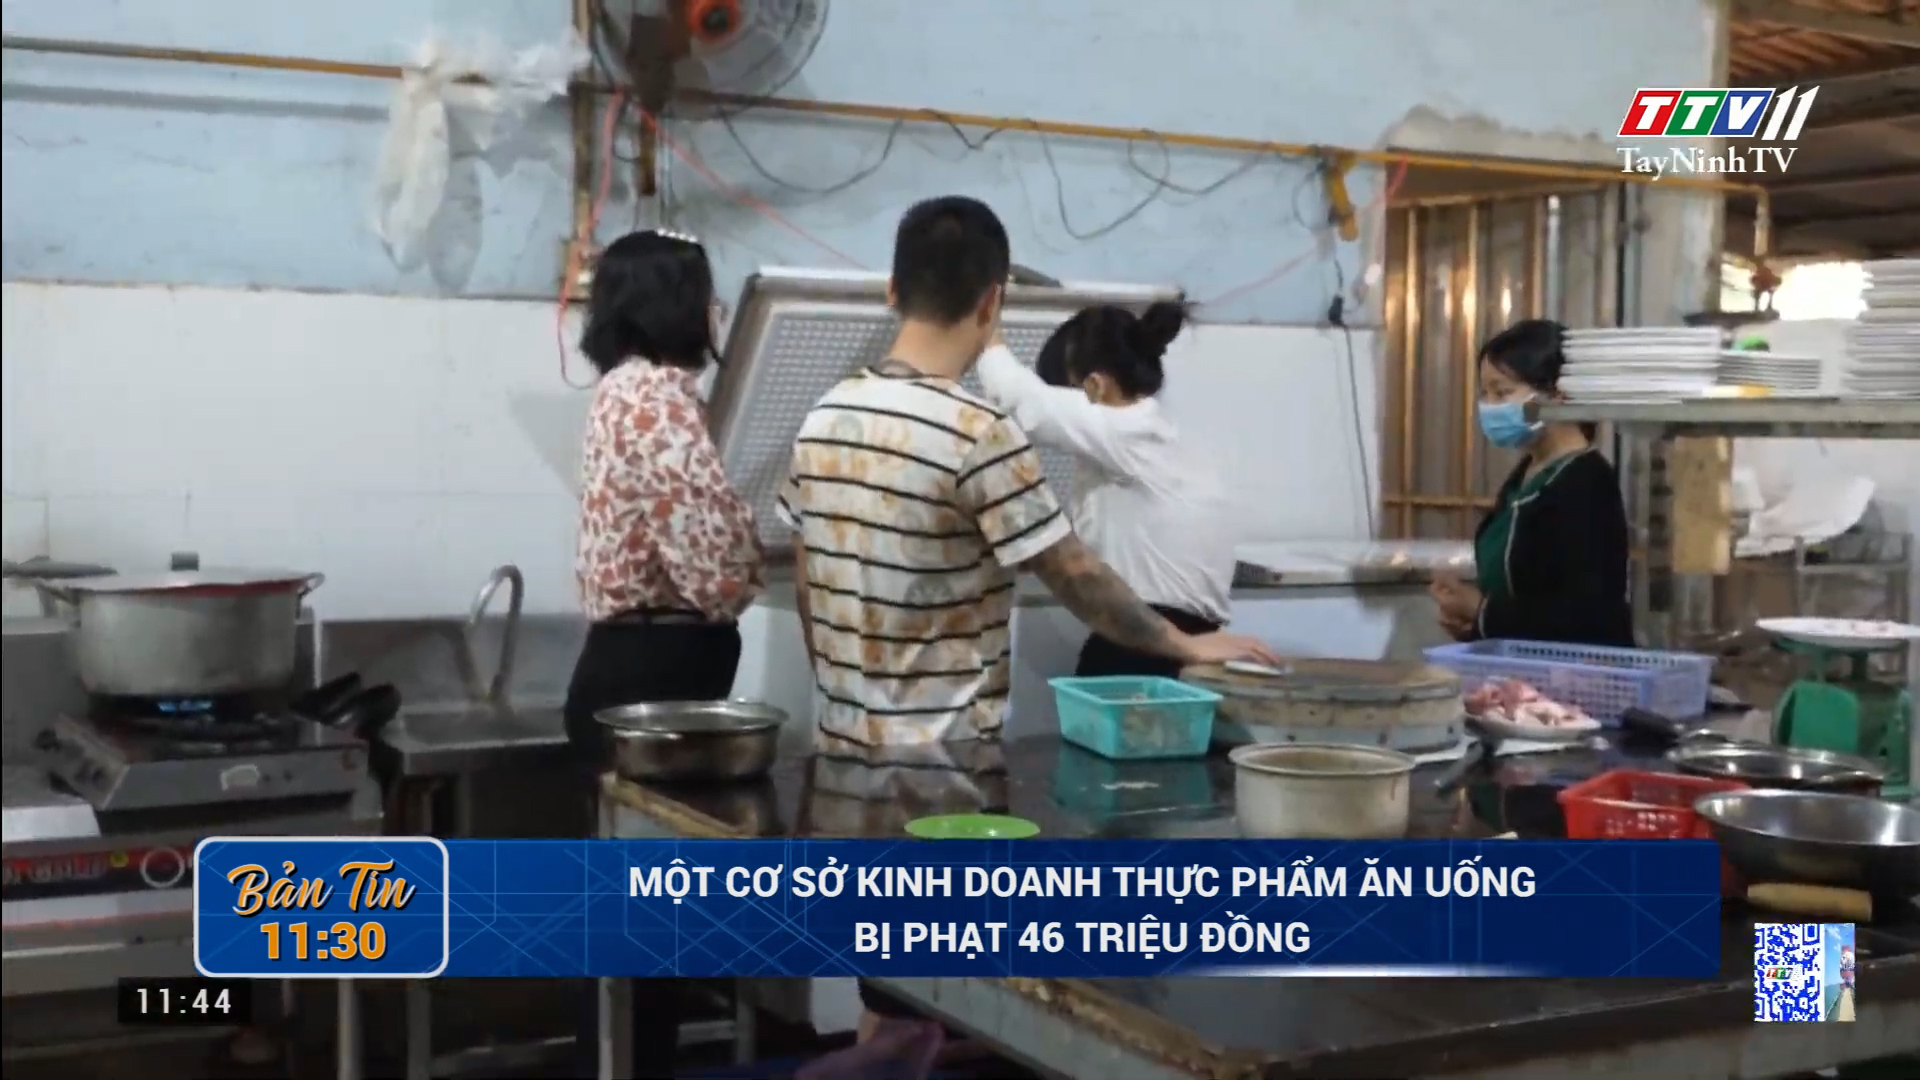 Một cơ sở kinh doanh thực phẩm ăn uống bị phạt 46 triệu đồng | TayNinhTV